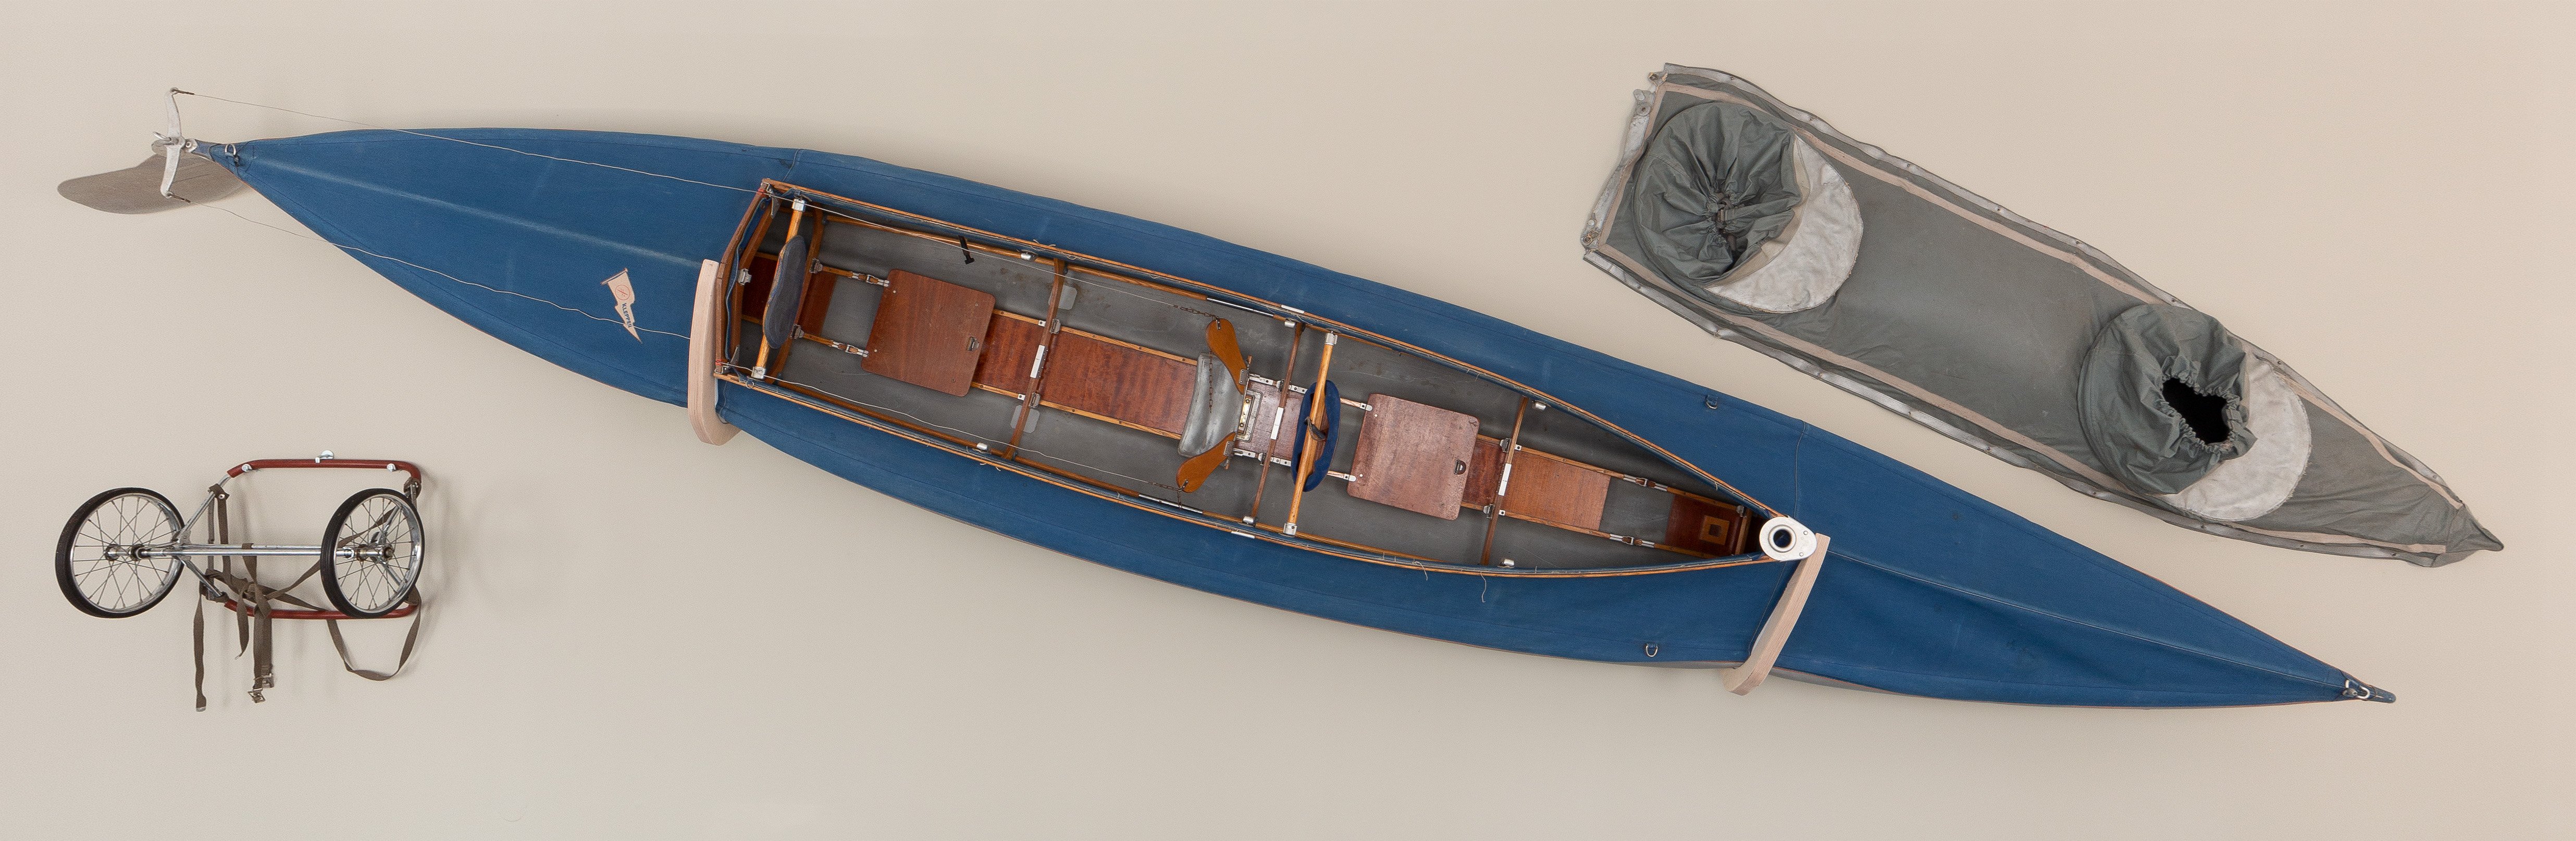 Klepper Faltboot "Aerius" (Schiffahrtsmuseum Unterweser CC BY-NC-SA)